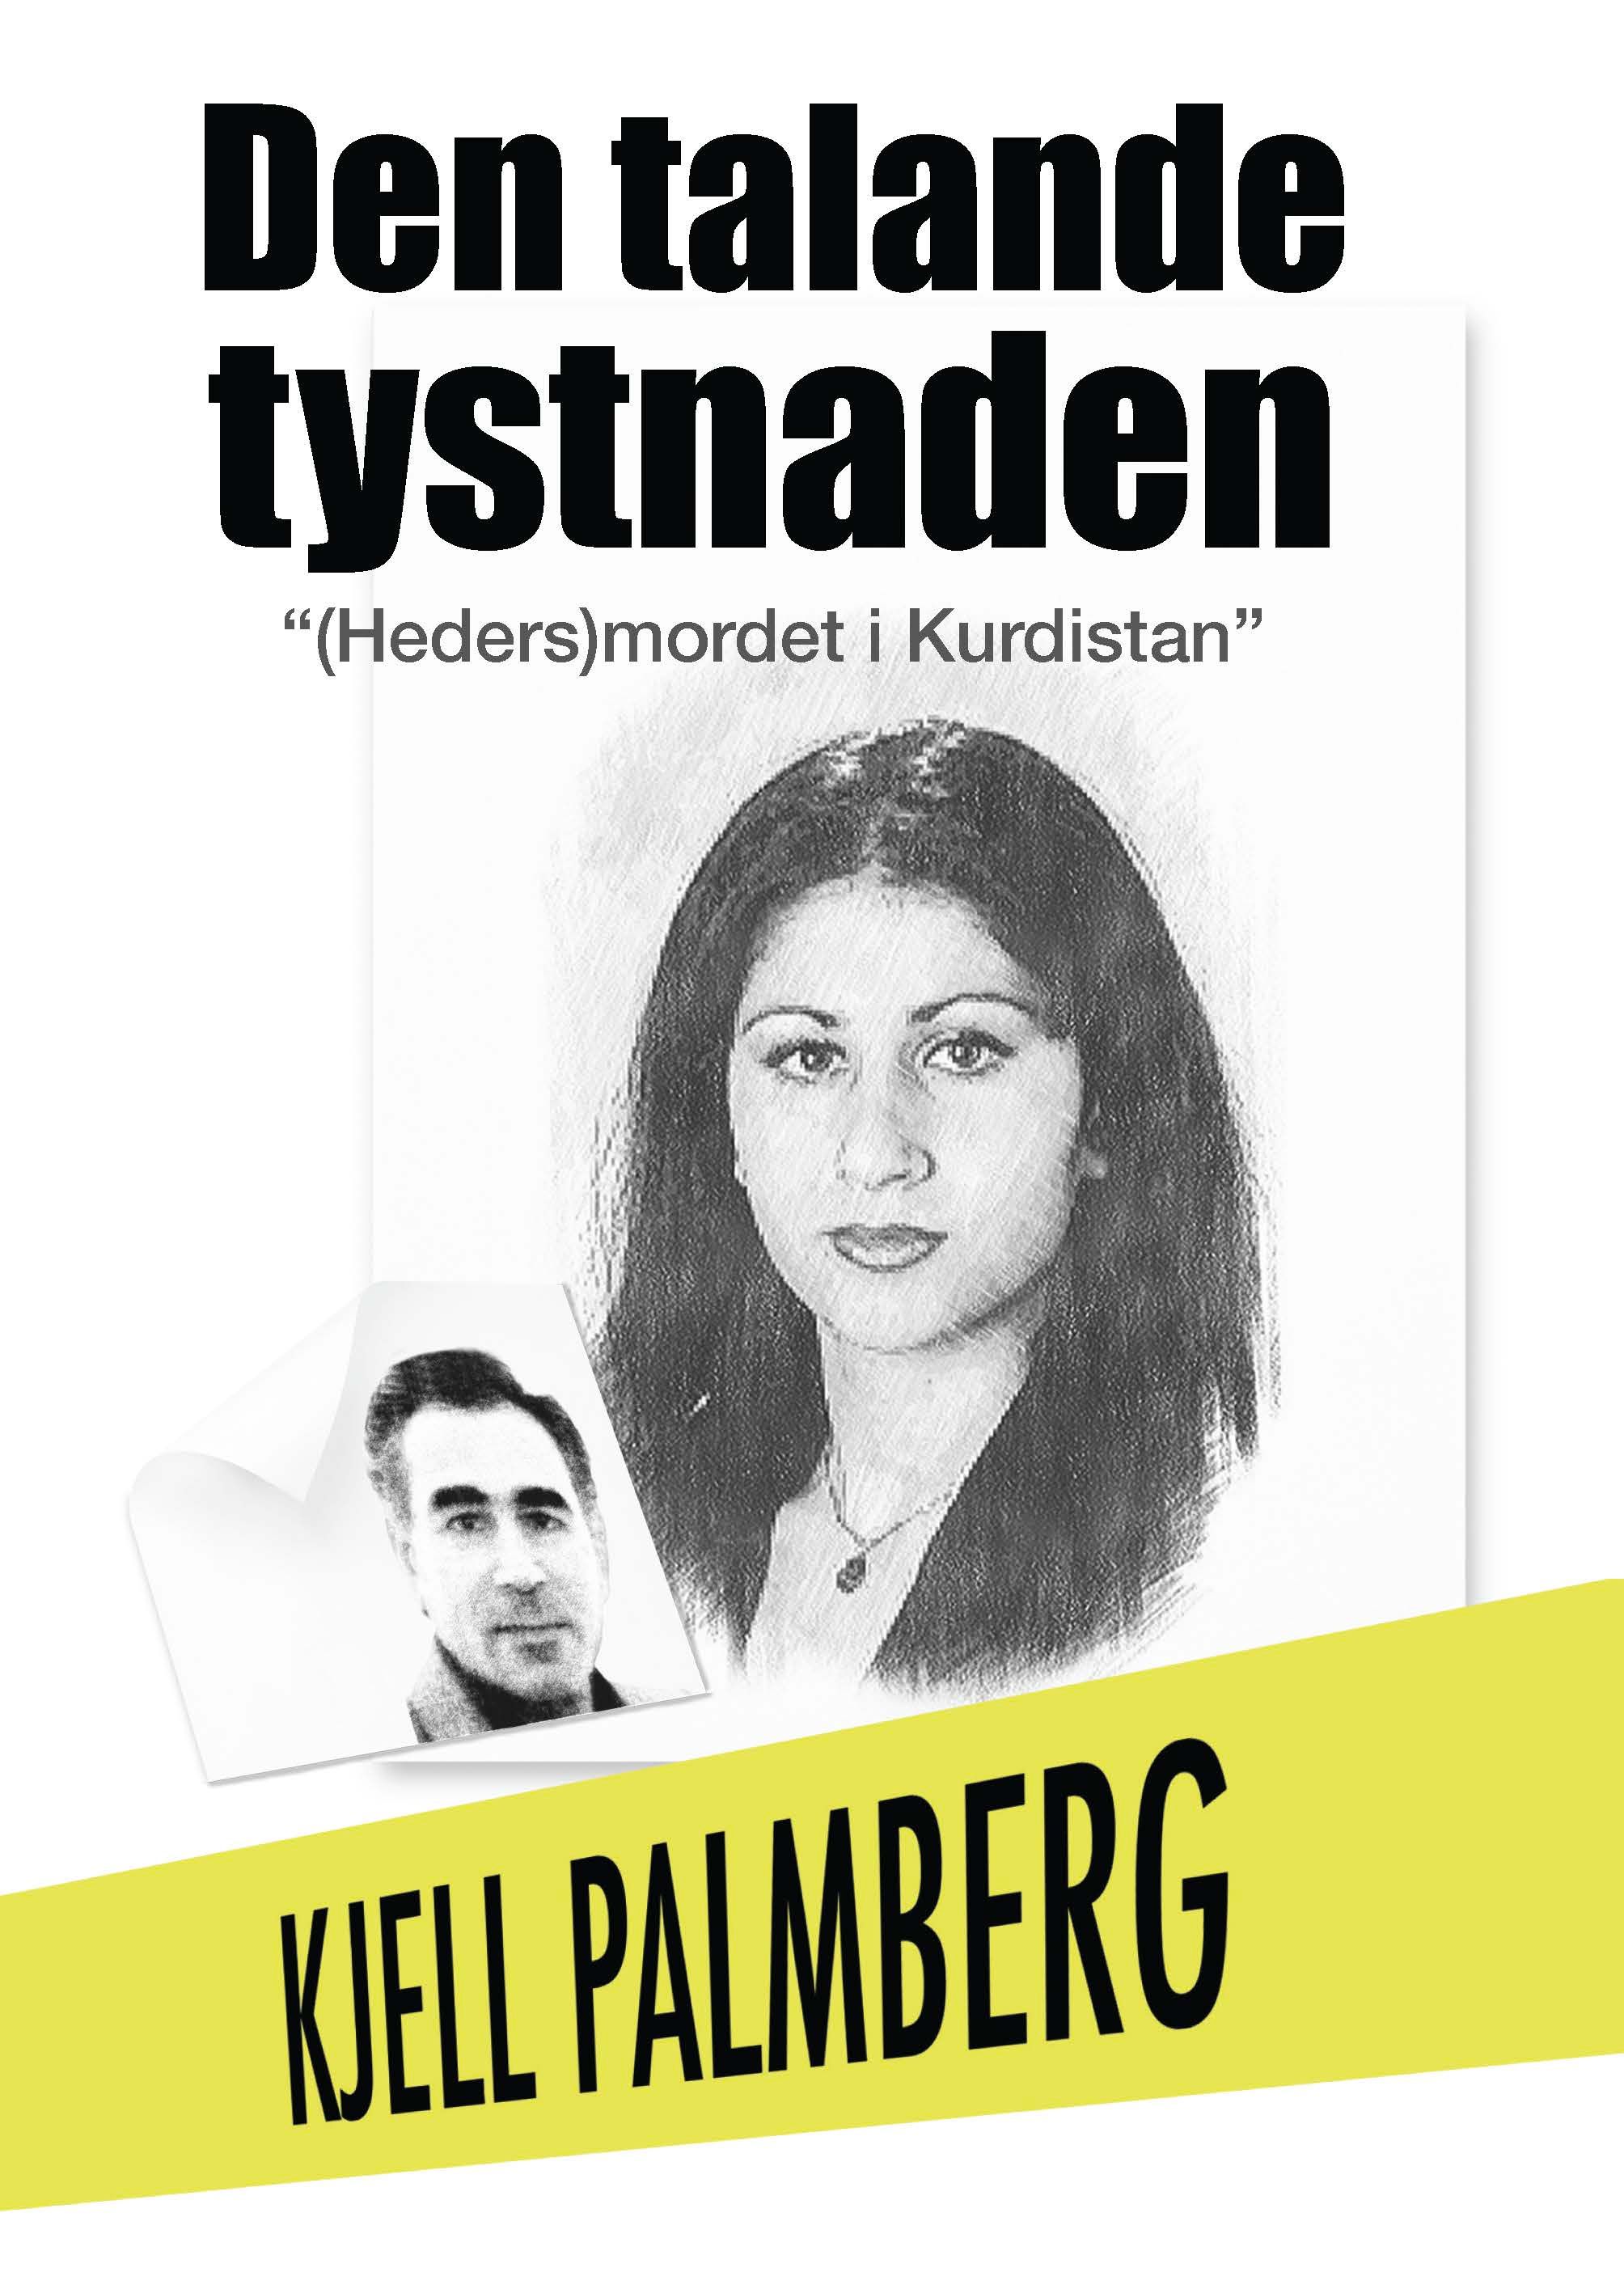 Den Talande Tystnaden, eBook by Kjell Palmberg